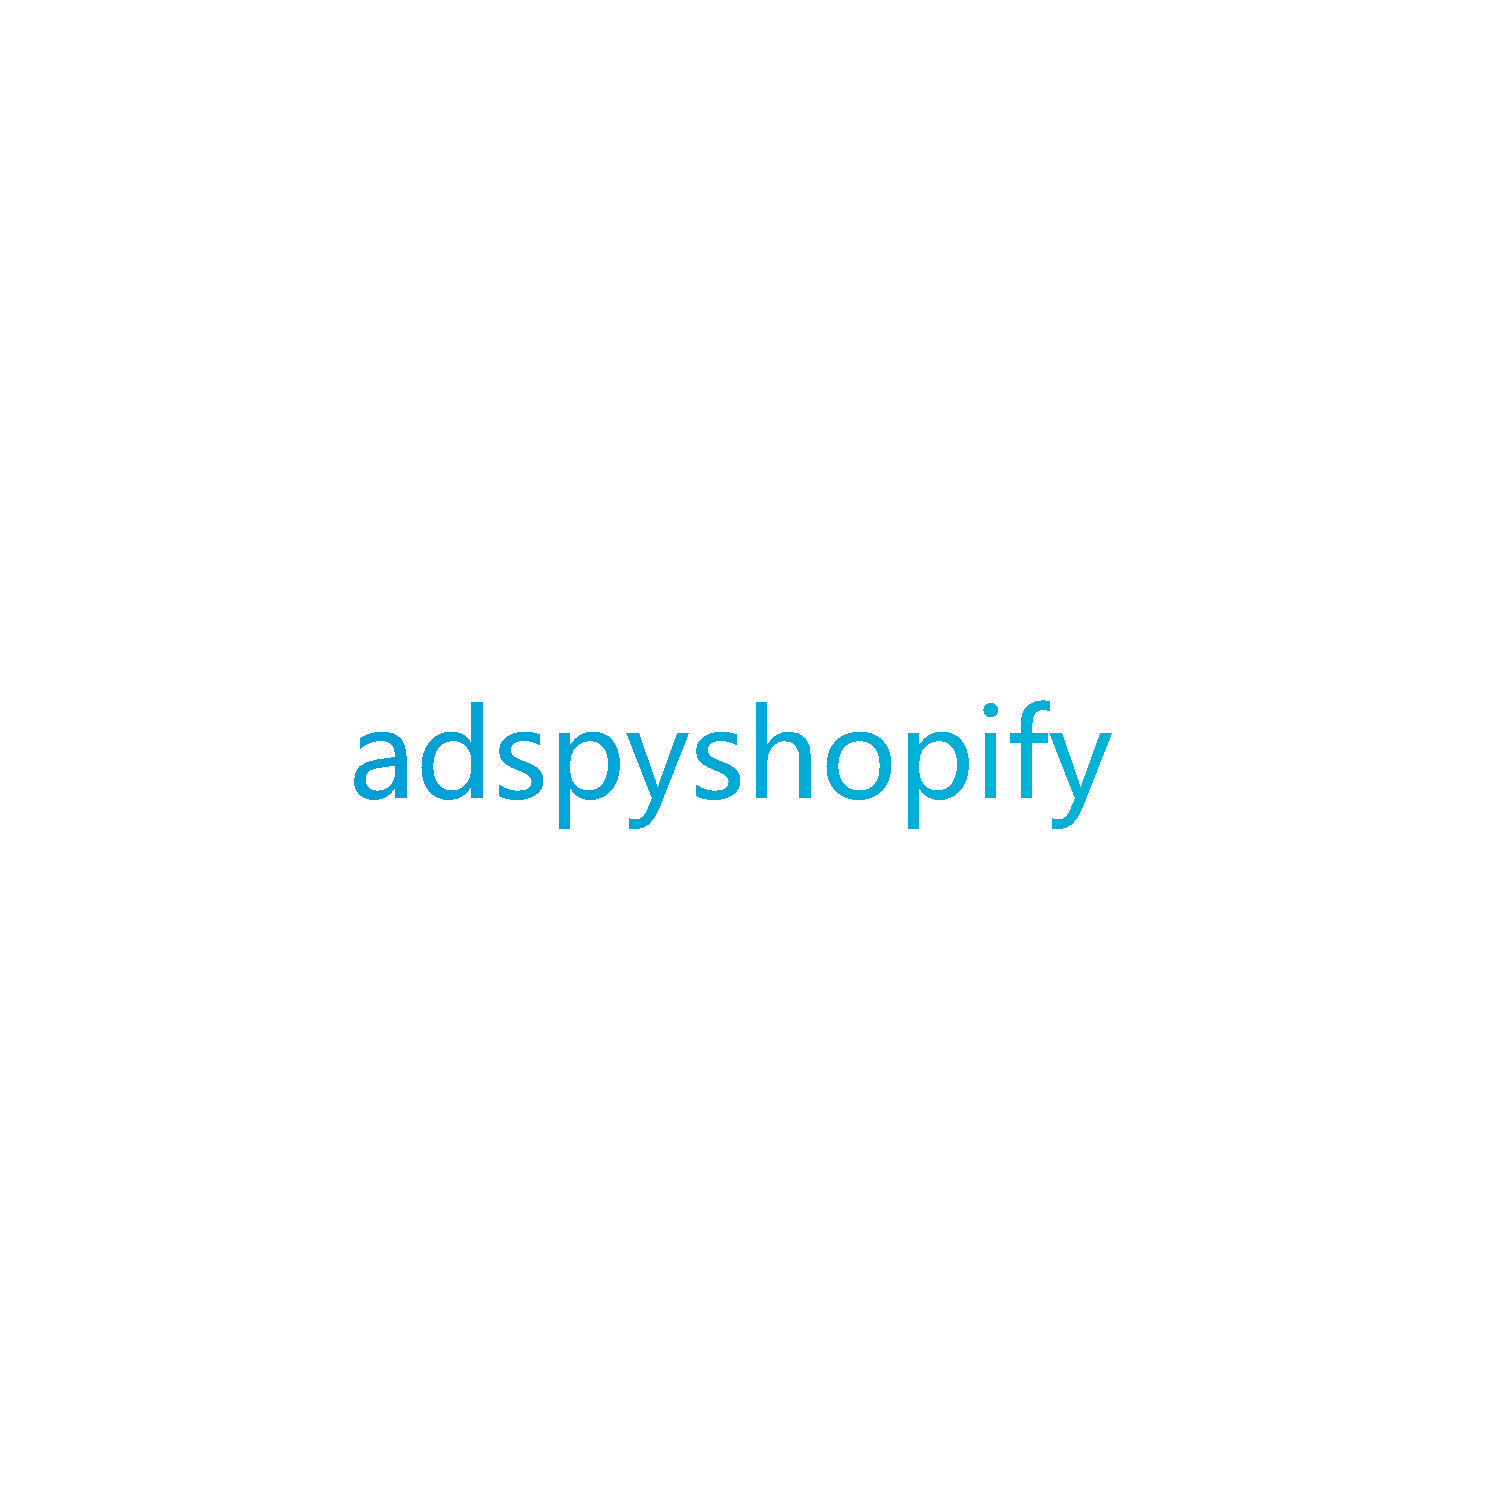 adspyshopify